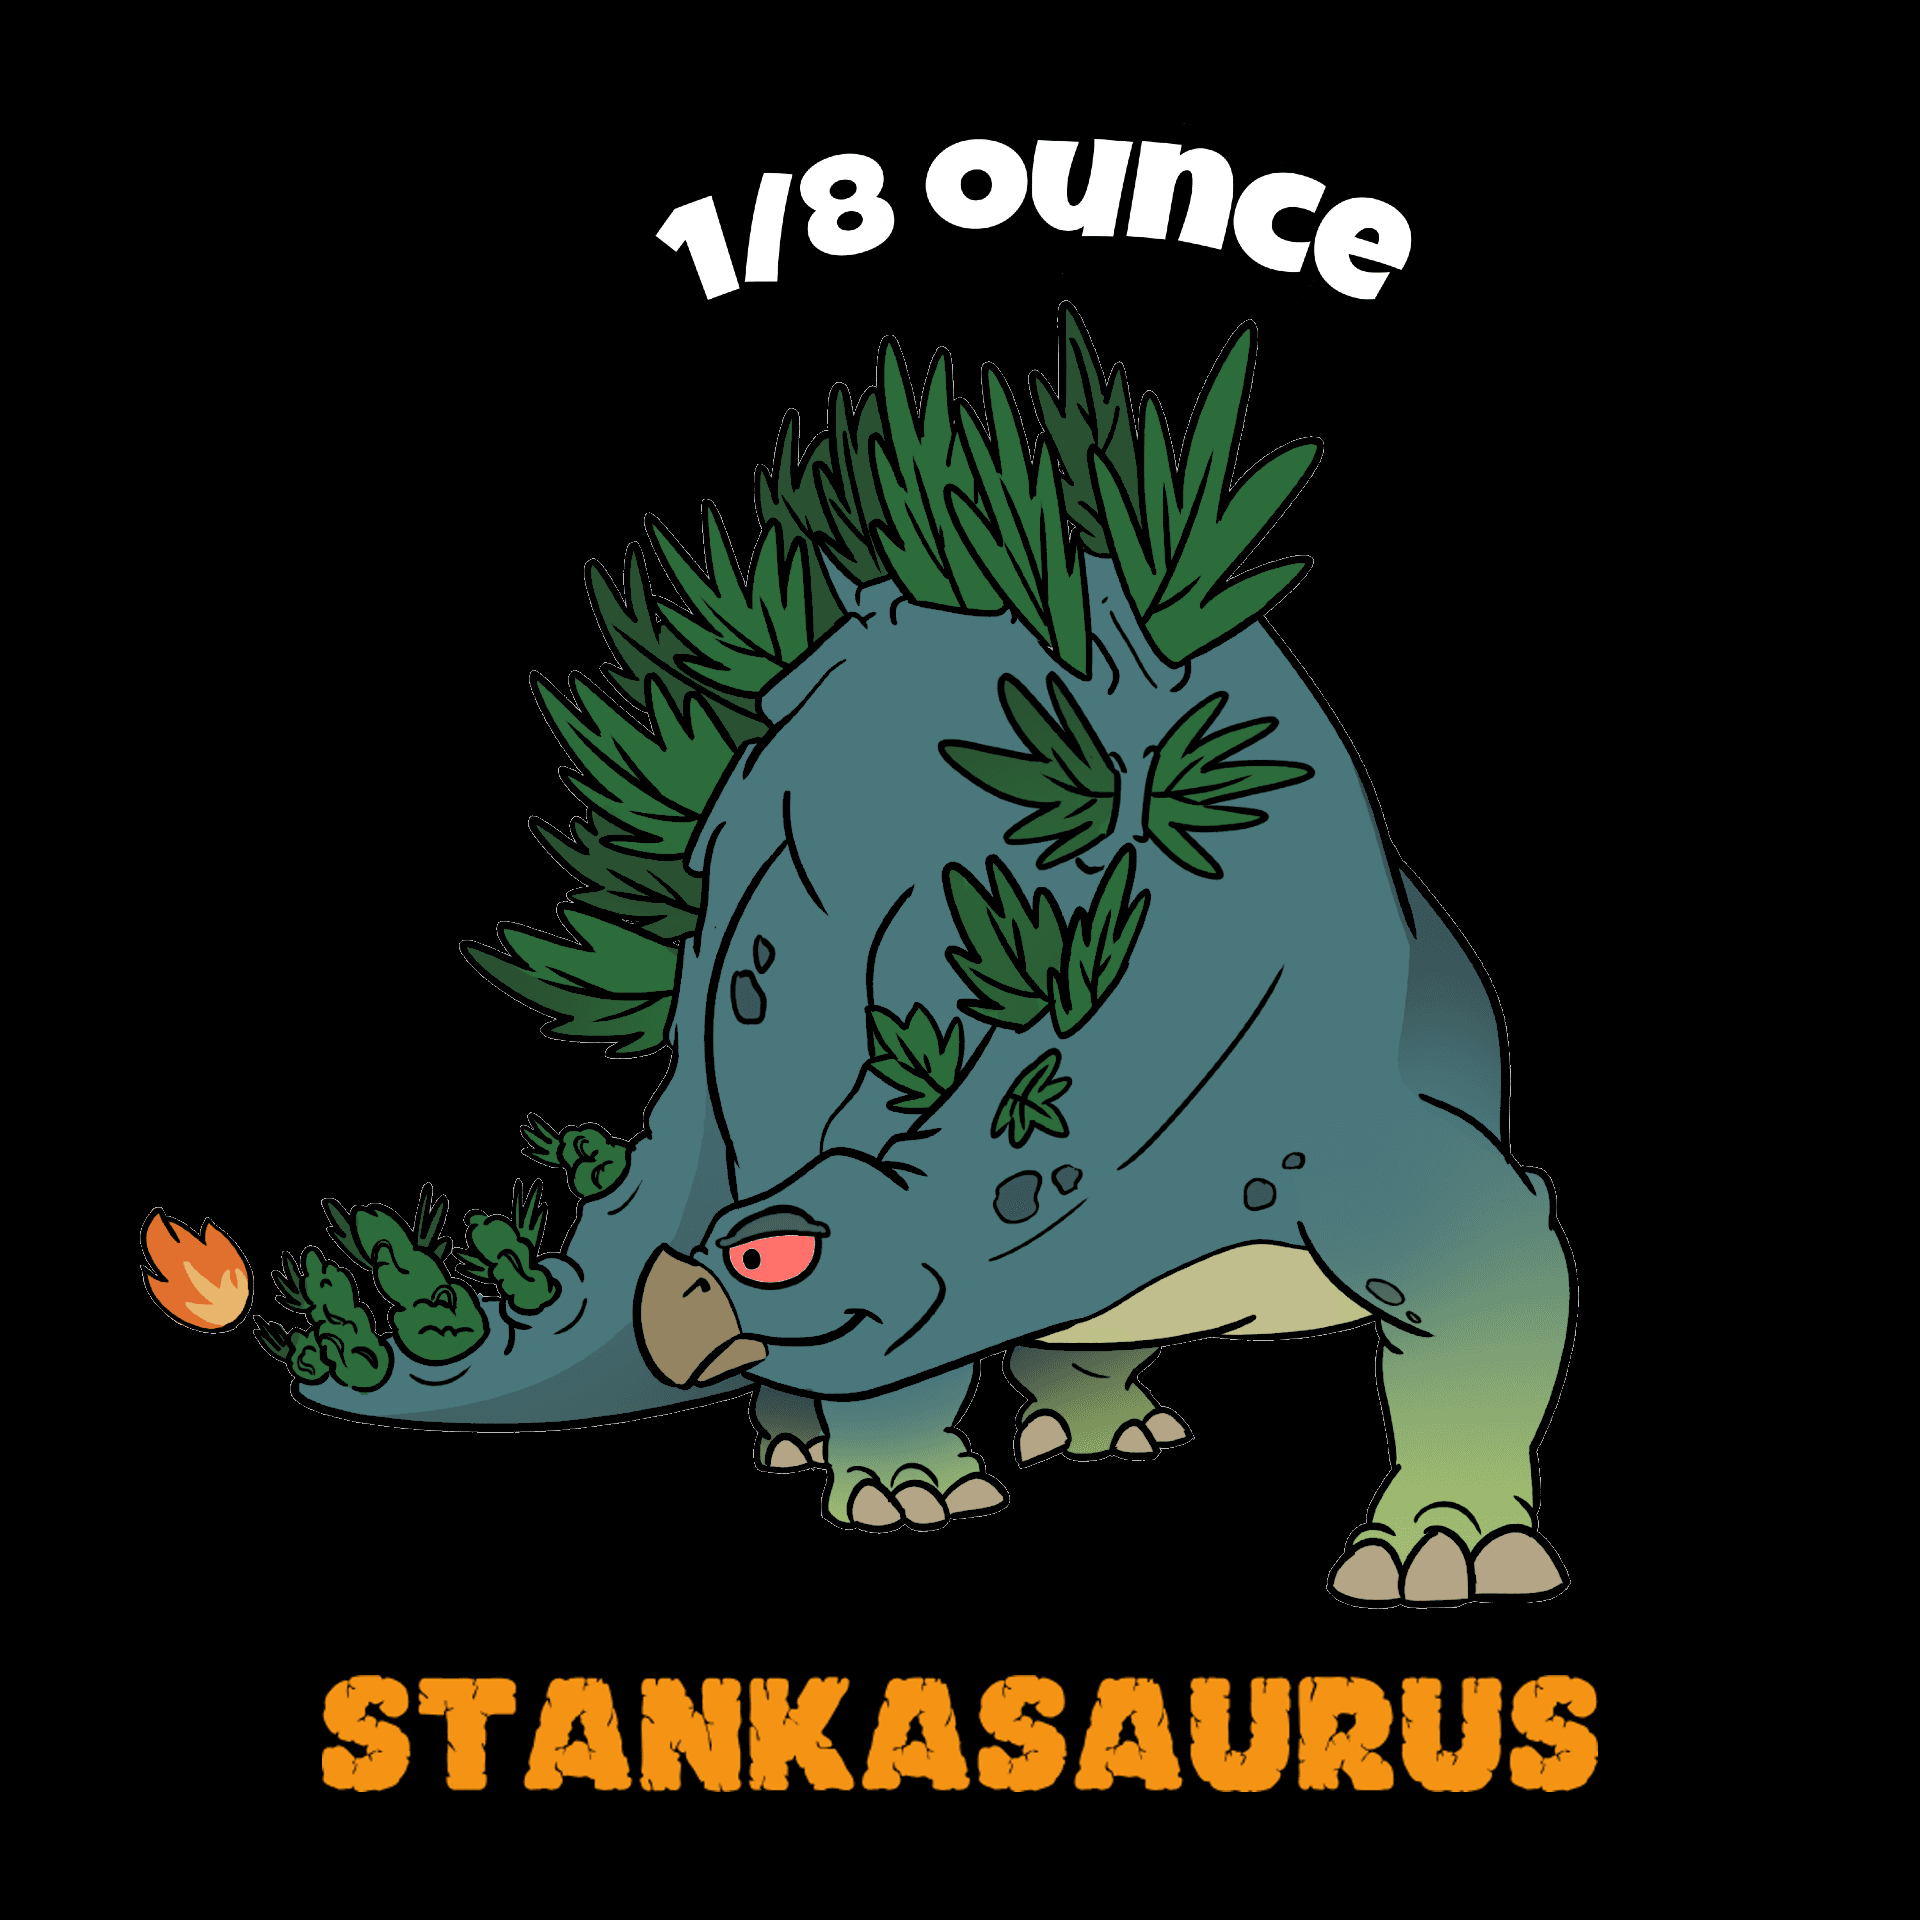 Stankasaurus 1/8 Ounce